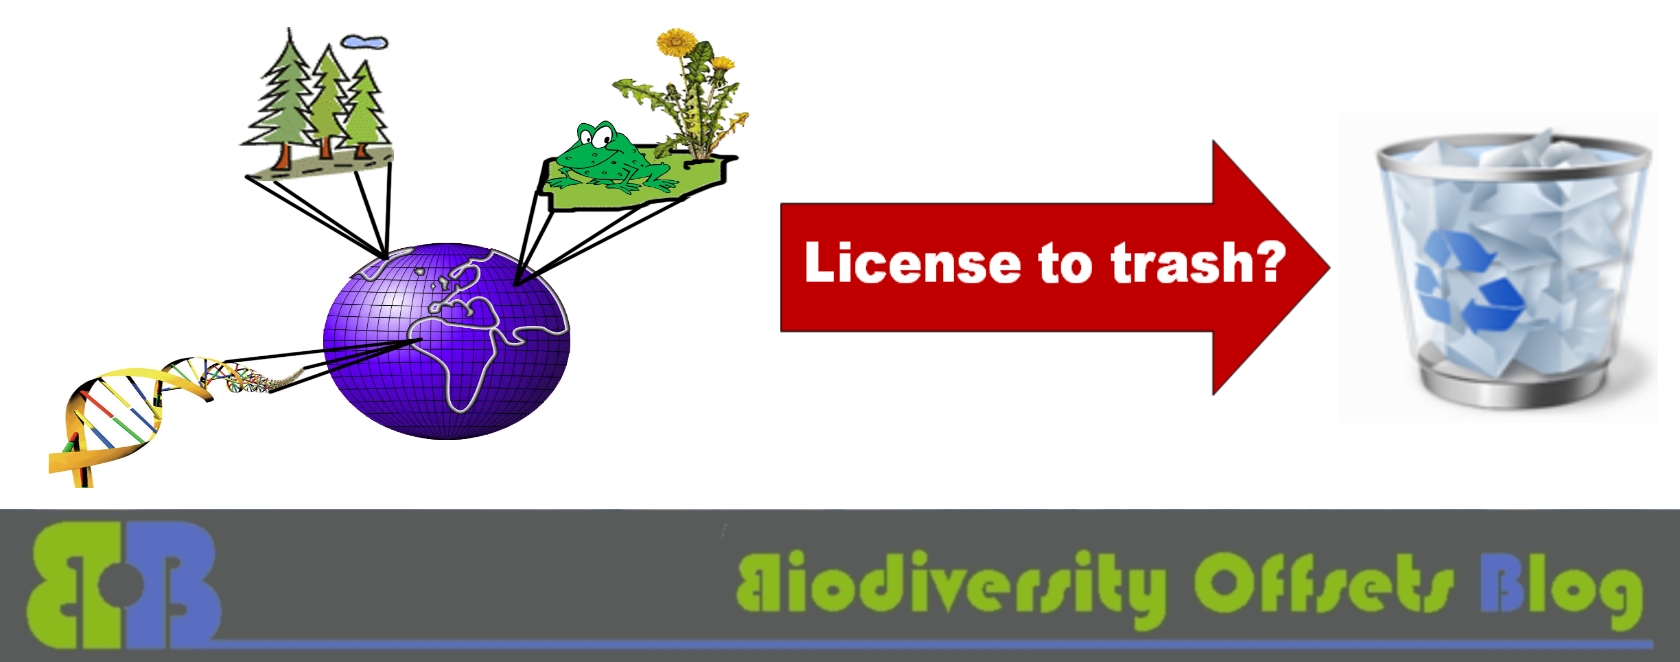 Biodiversity Offsets Blog Logo_hellgruen_License to trash_1680